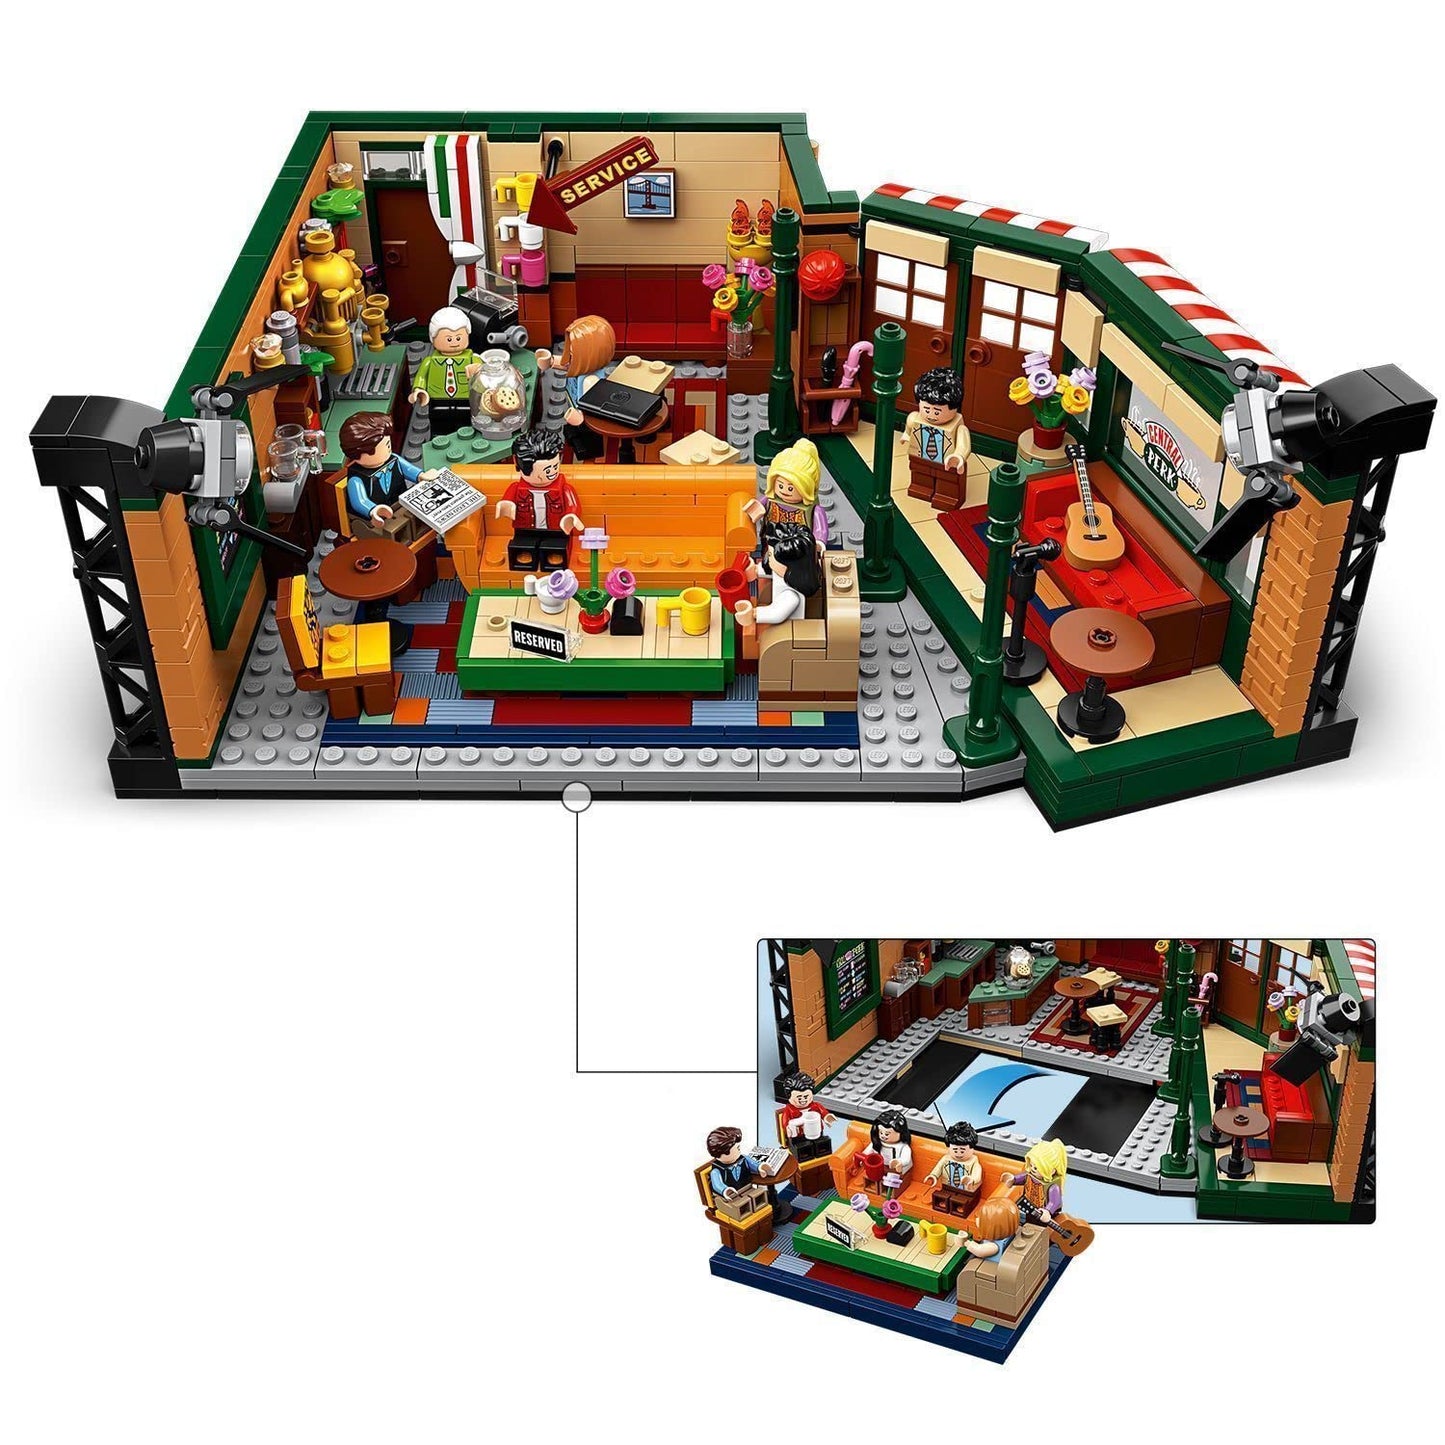 LEGO Ideas Central Perk 21319